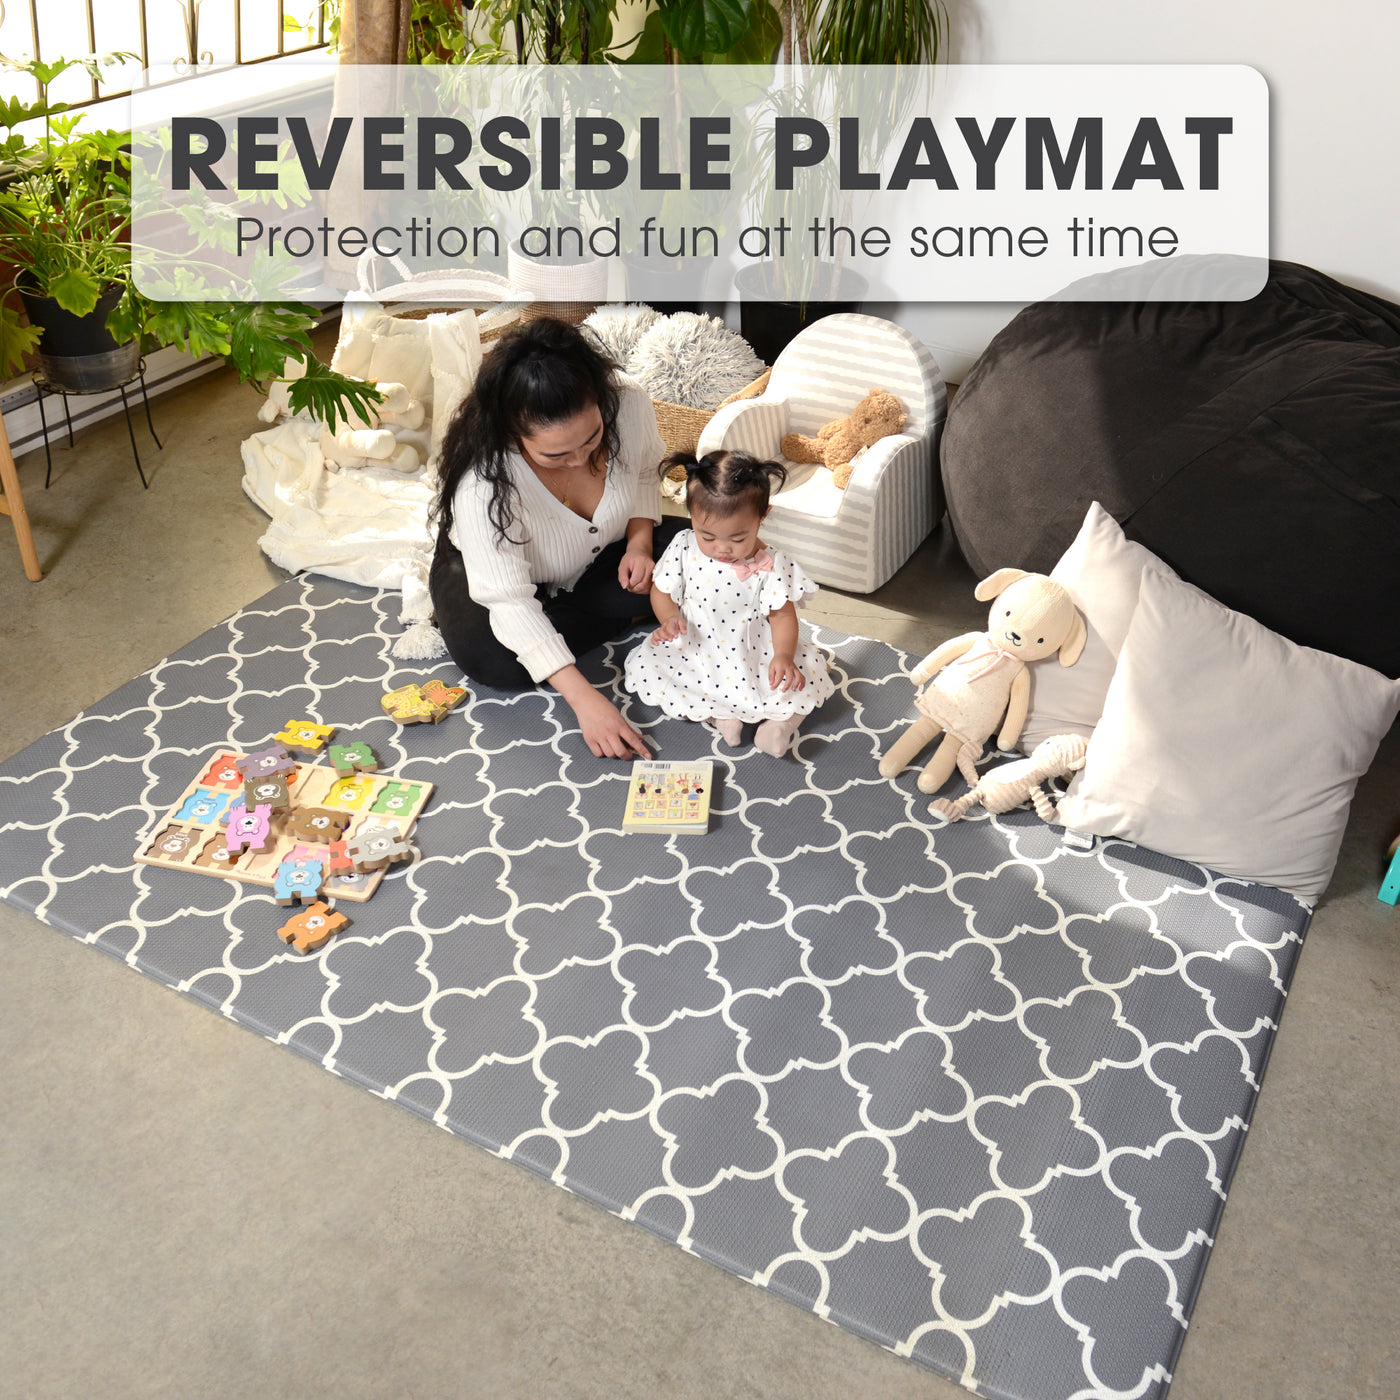 Baby Care Playmat - Renaissance - Large